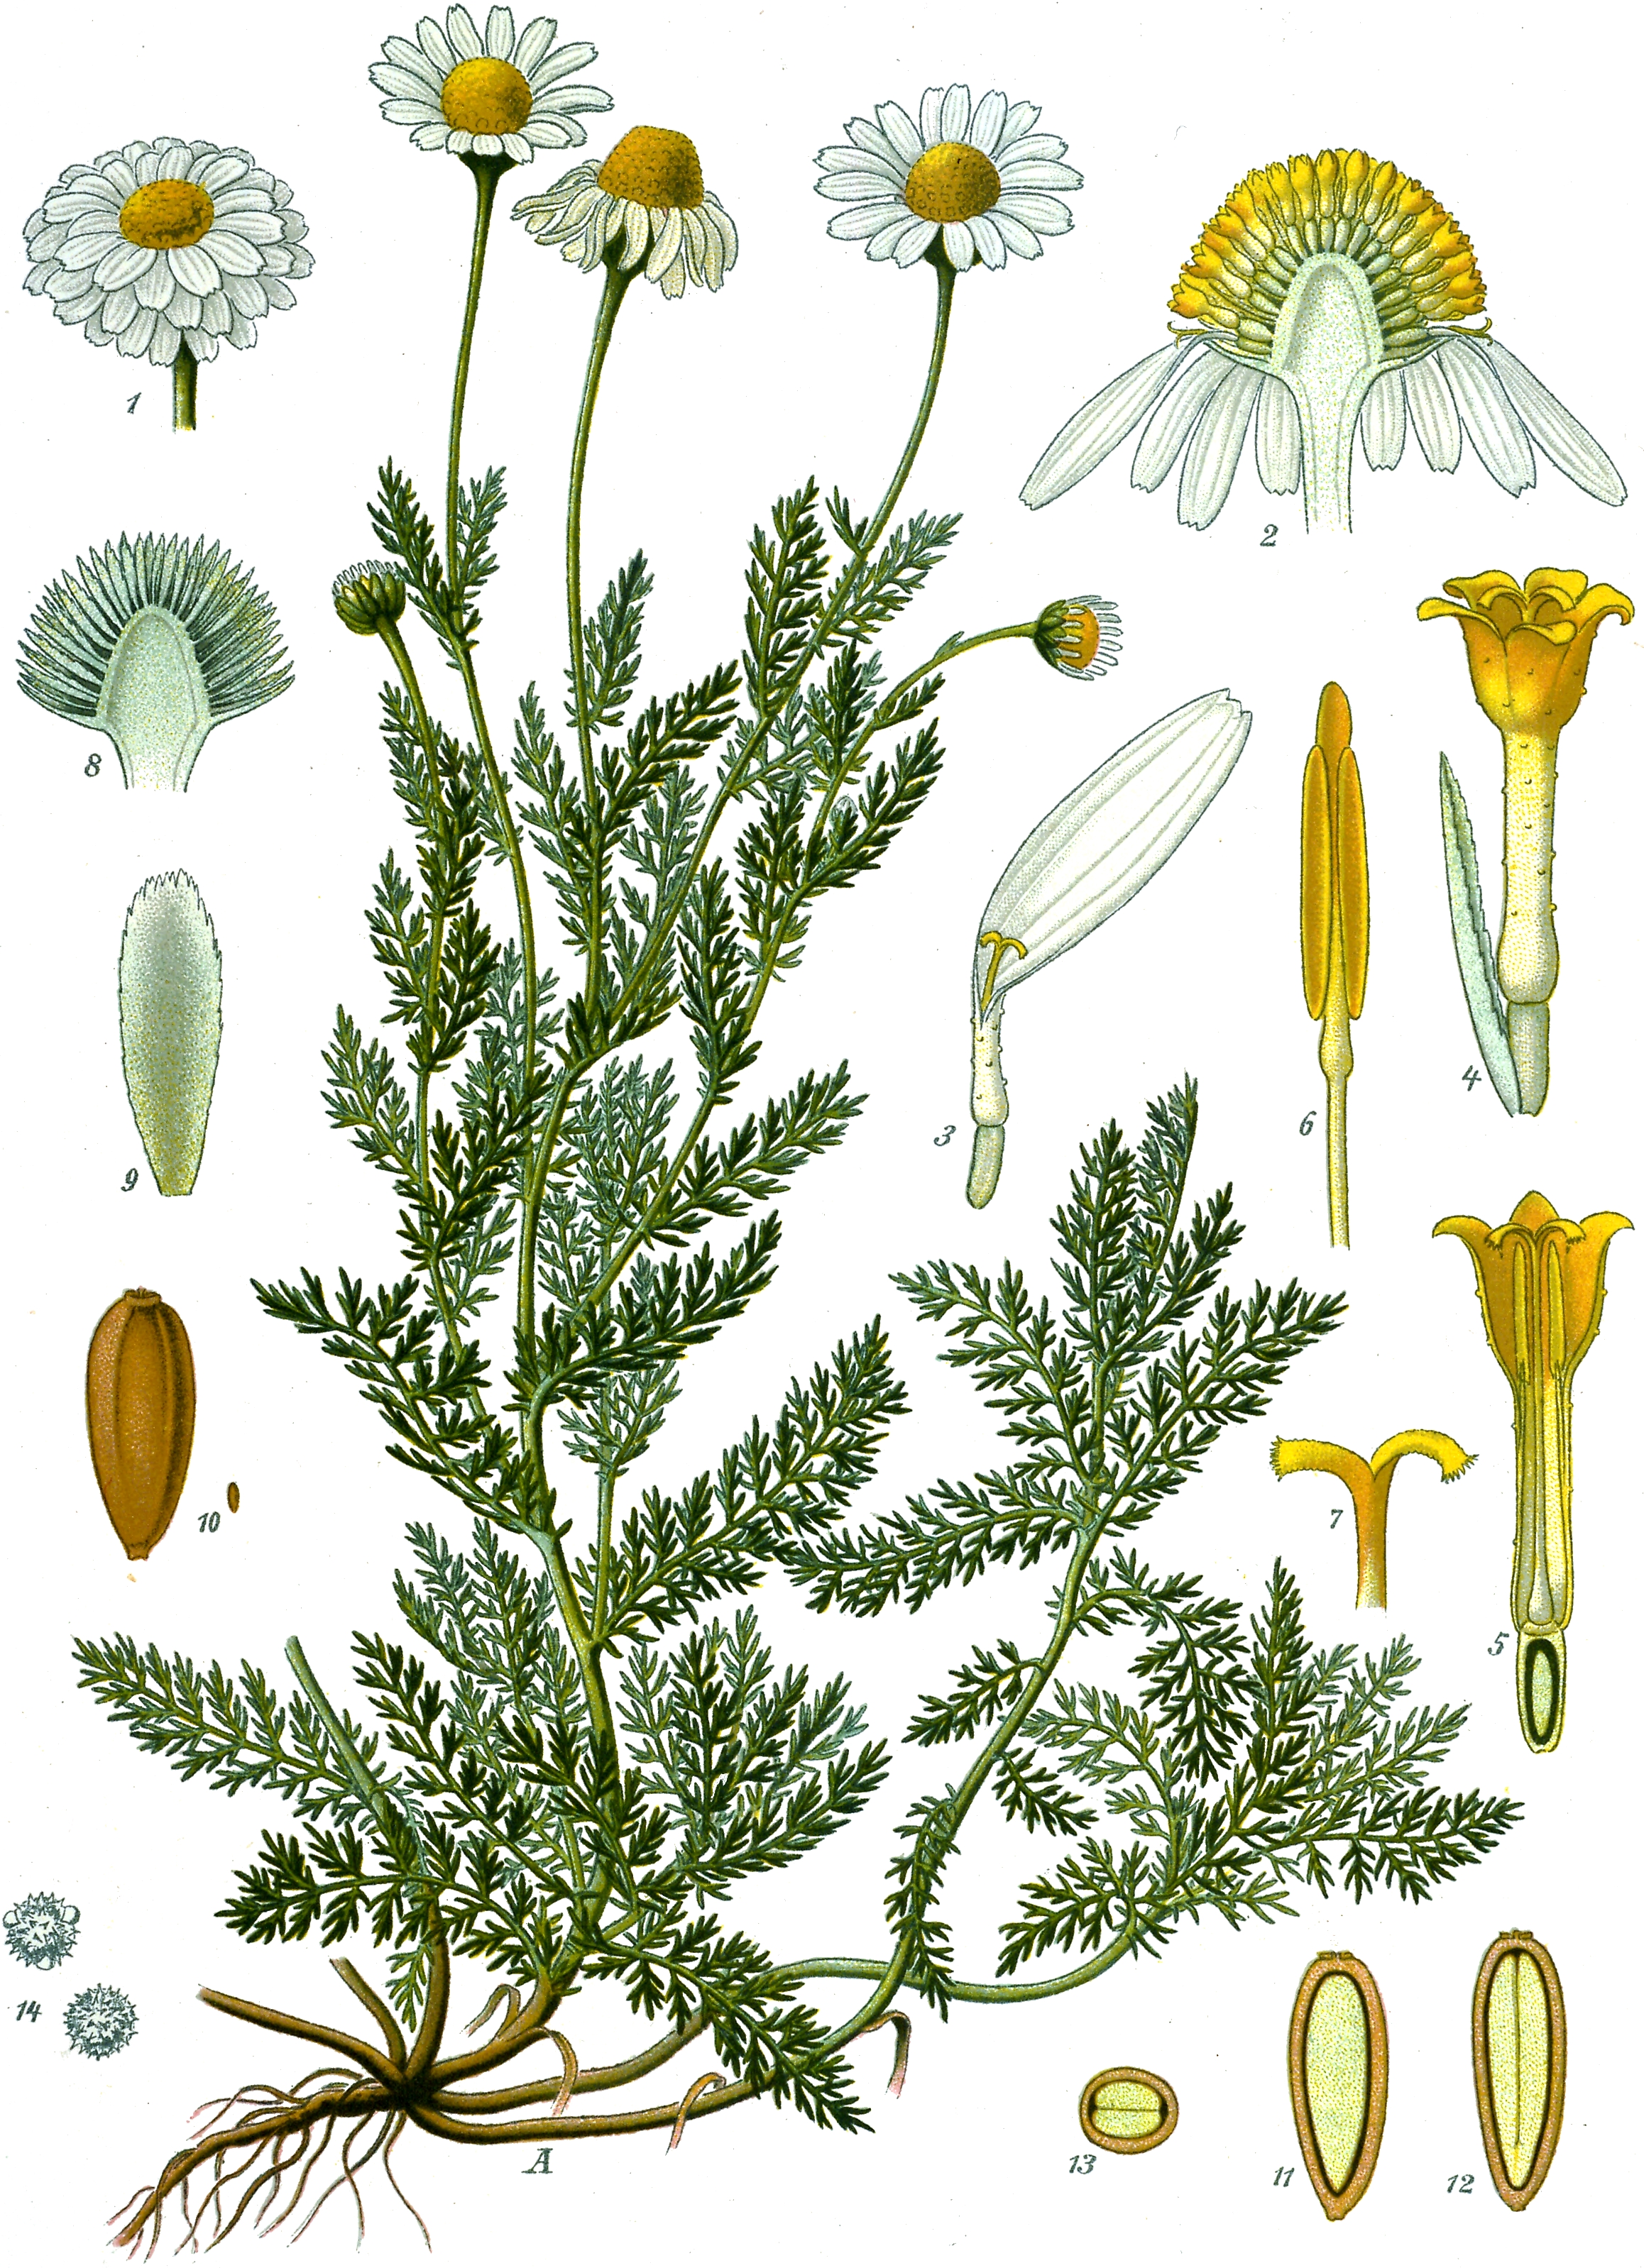 La Camomille romaine - l'Herbier du Diois : plantes aromatiques et